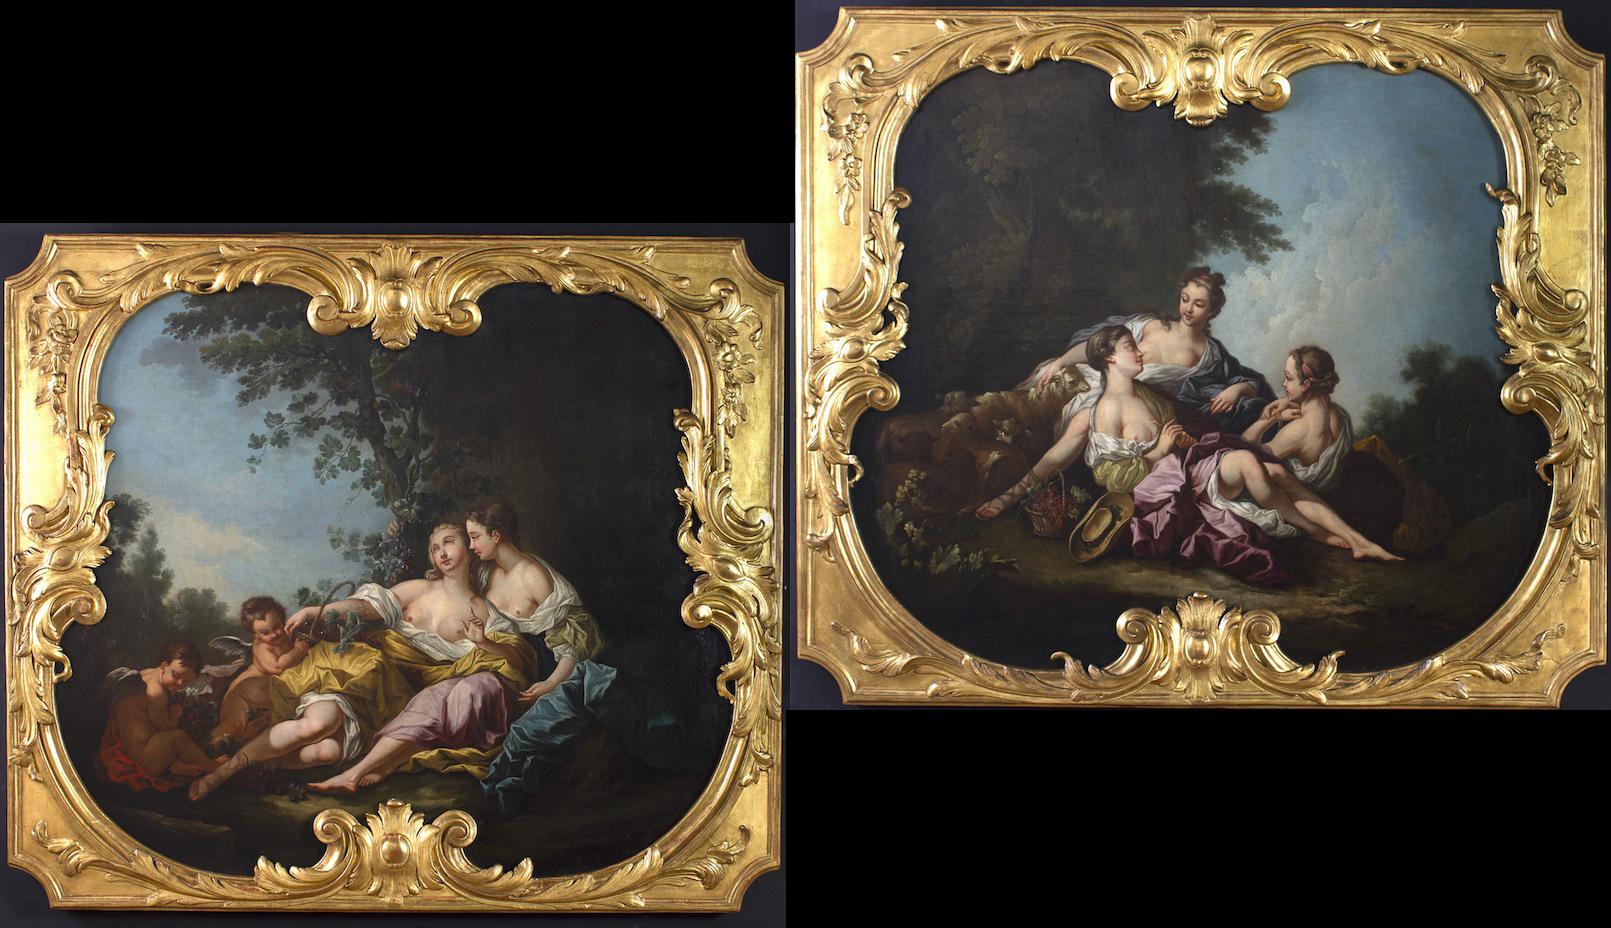  Des œuvres étonnantes de la scène du genre,  date de la fin du 18e siècle. Après le célèbre  L'artiste français François Boucher, qui fut le peintre de la cour du roi Louis XV.
Elle se trouve dans son cadre d'origine en bois finement sculpté et